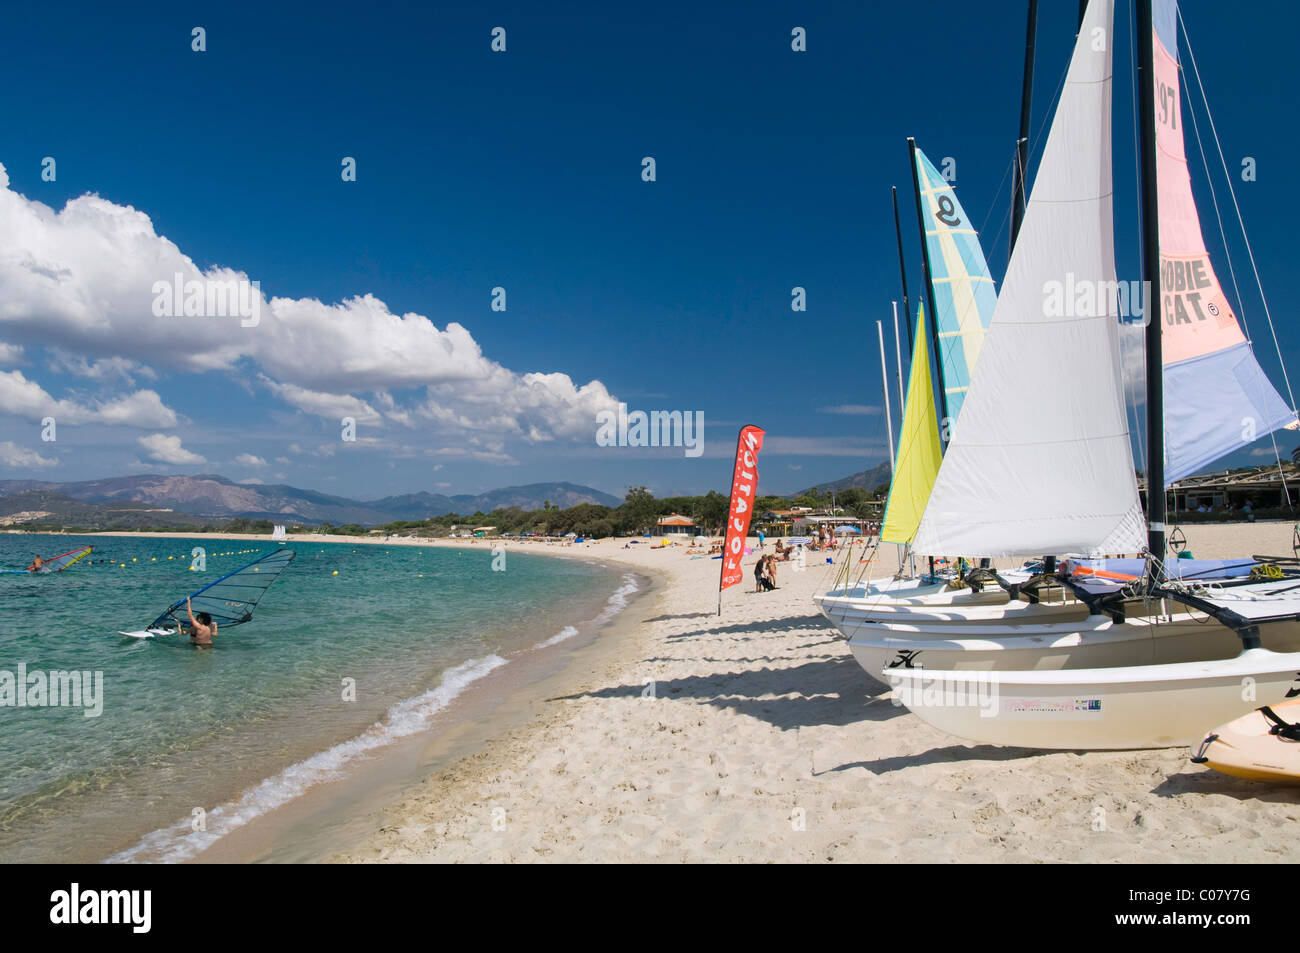 Voiliers sur la plage, à Porticcio, golfe d'Ajaccio, Corse, Corse, France, Europe Banque D'Images